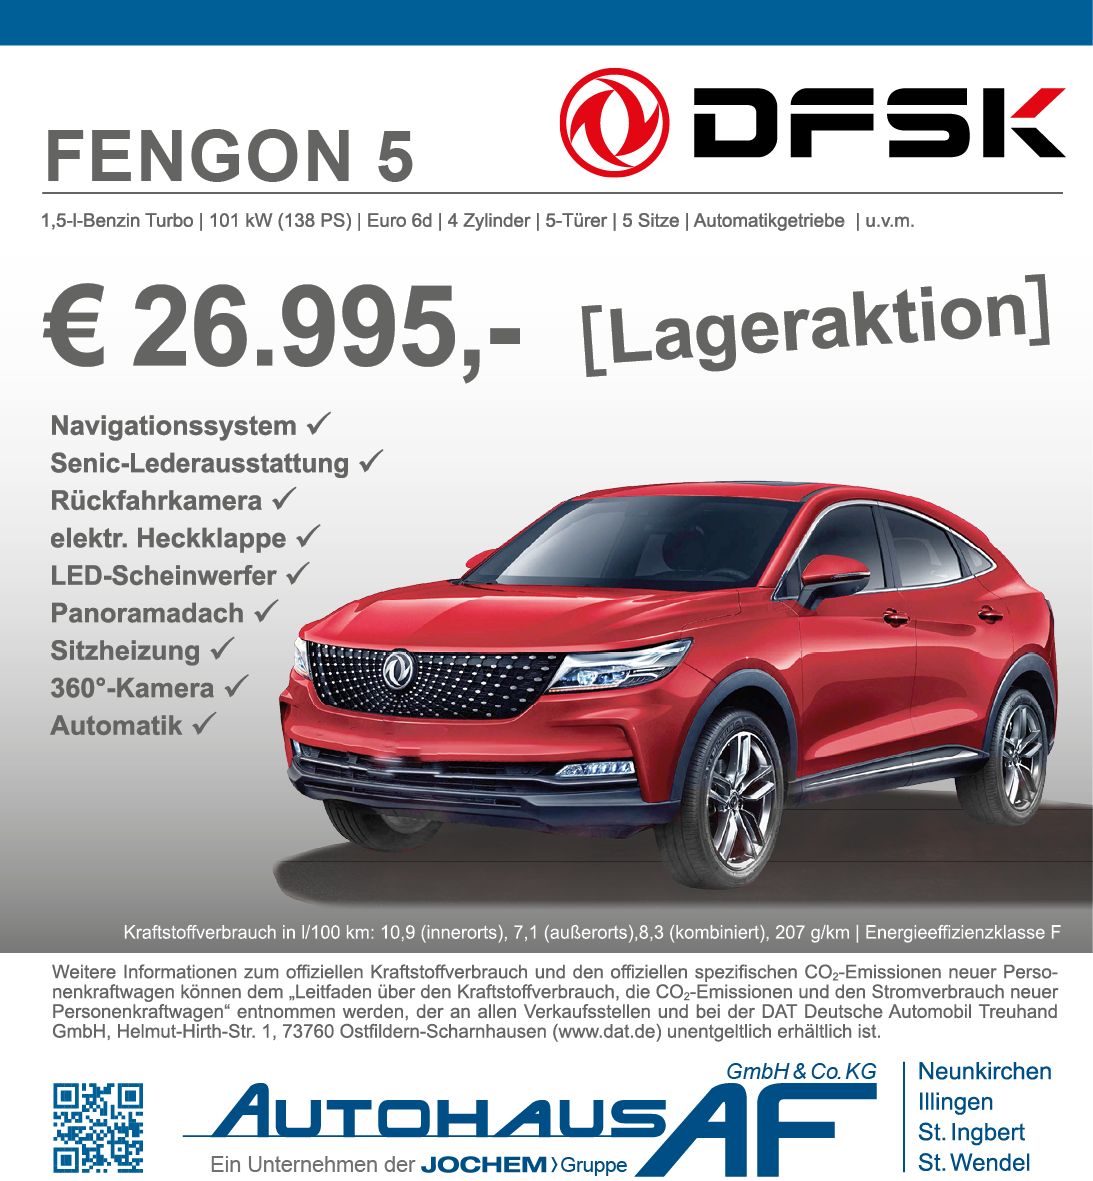 DFSK Fengon 5 | Autohaus AF | Neunkirchen | Jochem Gruppe